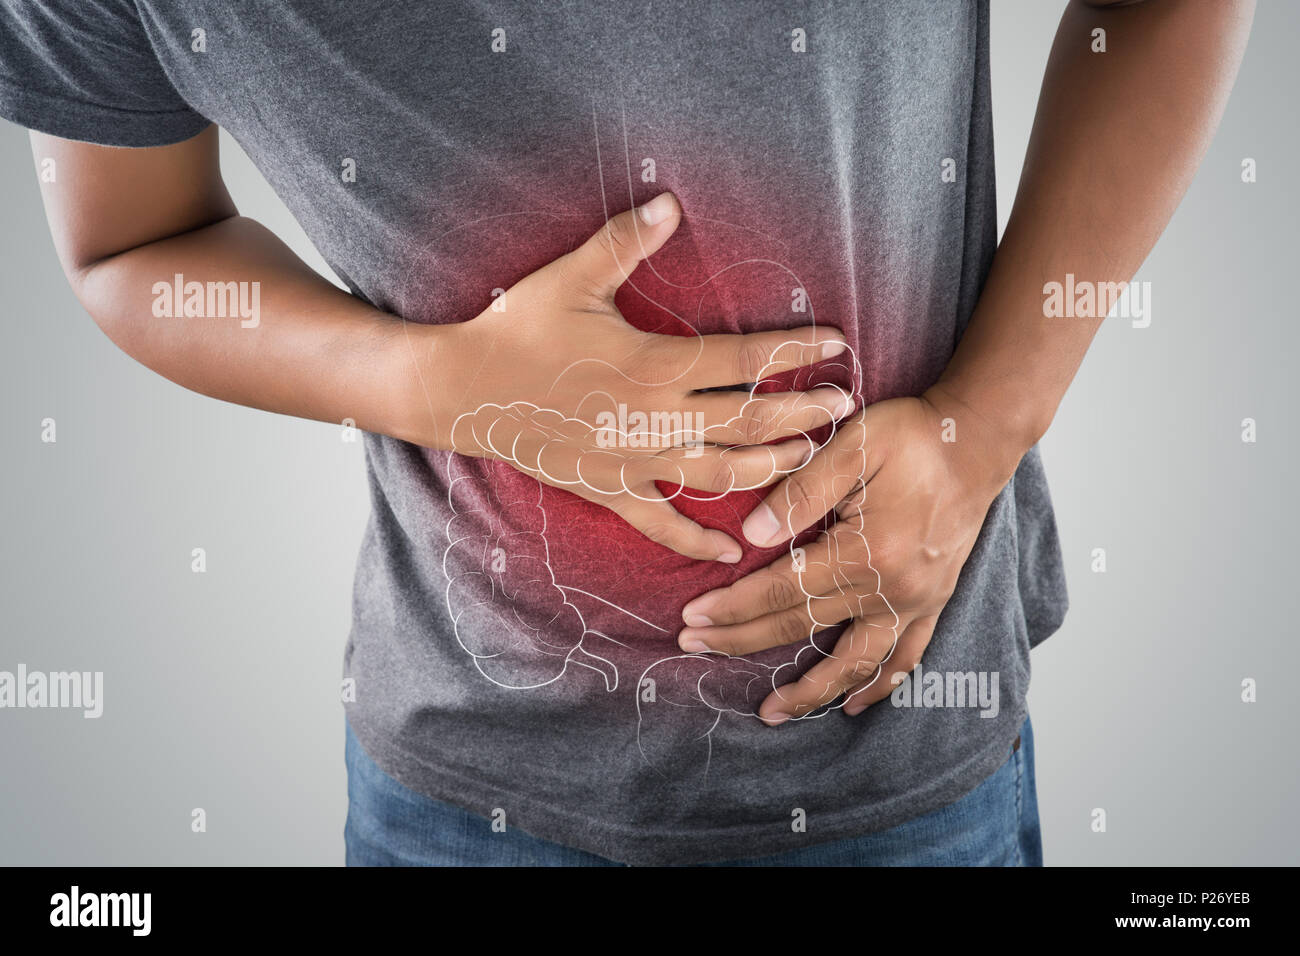 La foto del intestino grueso se encuentra en el cuerpo del hombre contra un fondo gris, las personas con dolor de estómago problema concepto, anatomía masculina Foto de stock